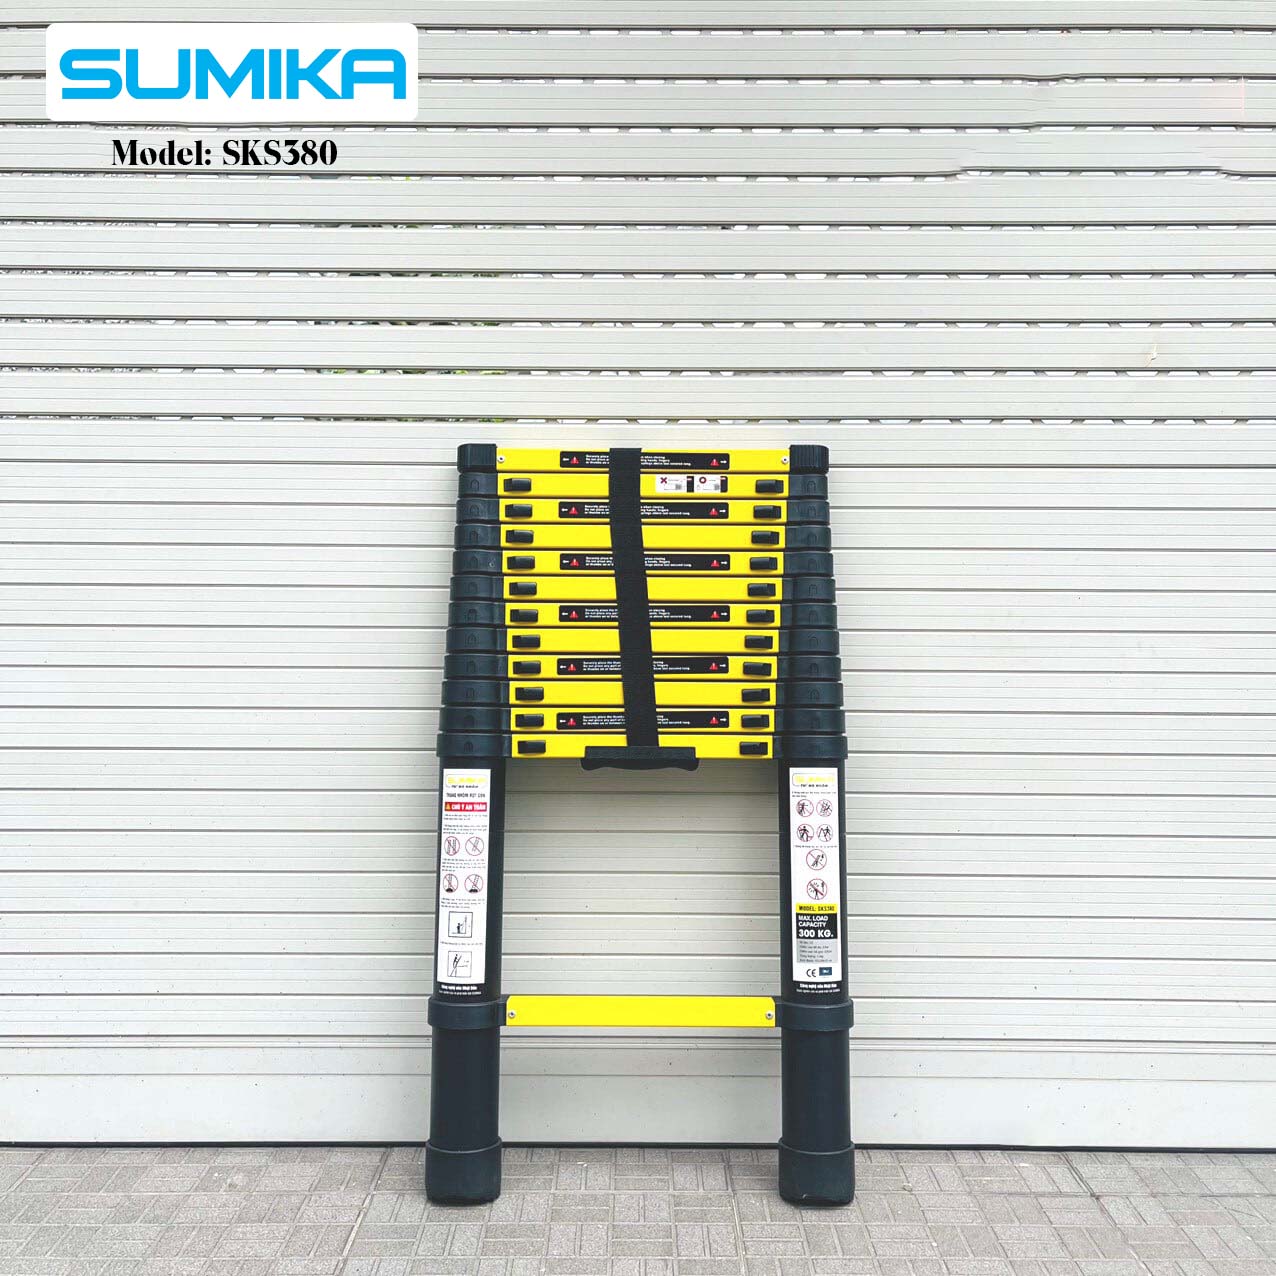 Thang nhôm rút gọn SUMIKA SKS380 - Chiều cao tối đa 3.8m, sơn tĩnh điện, chống trầy xước, khóa chốt cao cấp, đế cao su chống trượt, bậc thang diện tích rộng, nhỏ gọn, tiện lợi di chuyển